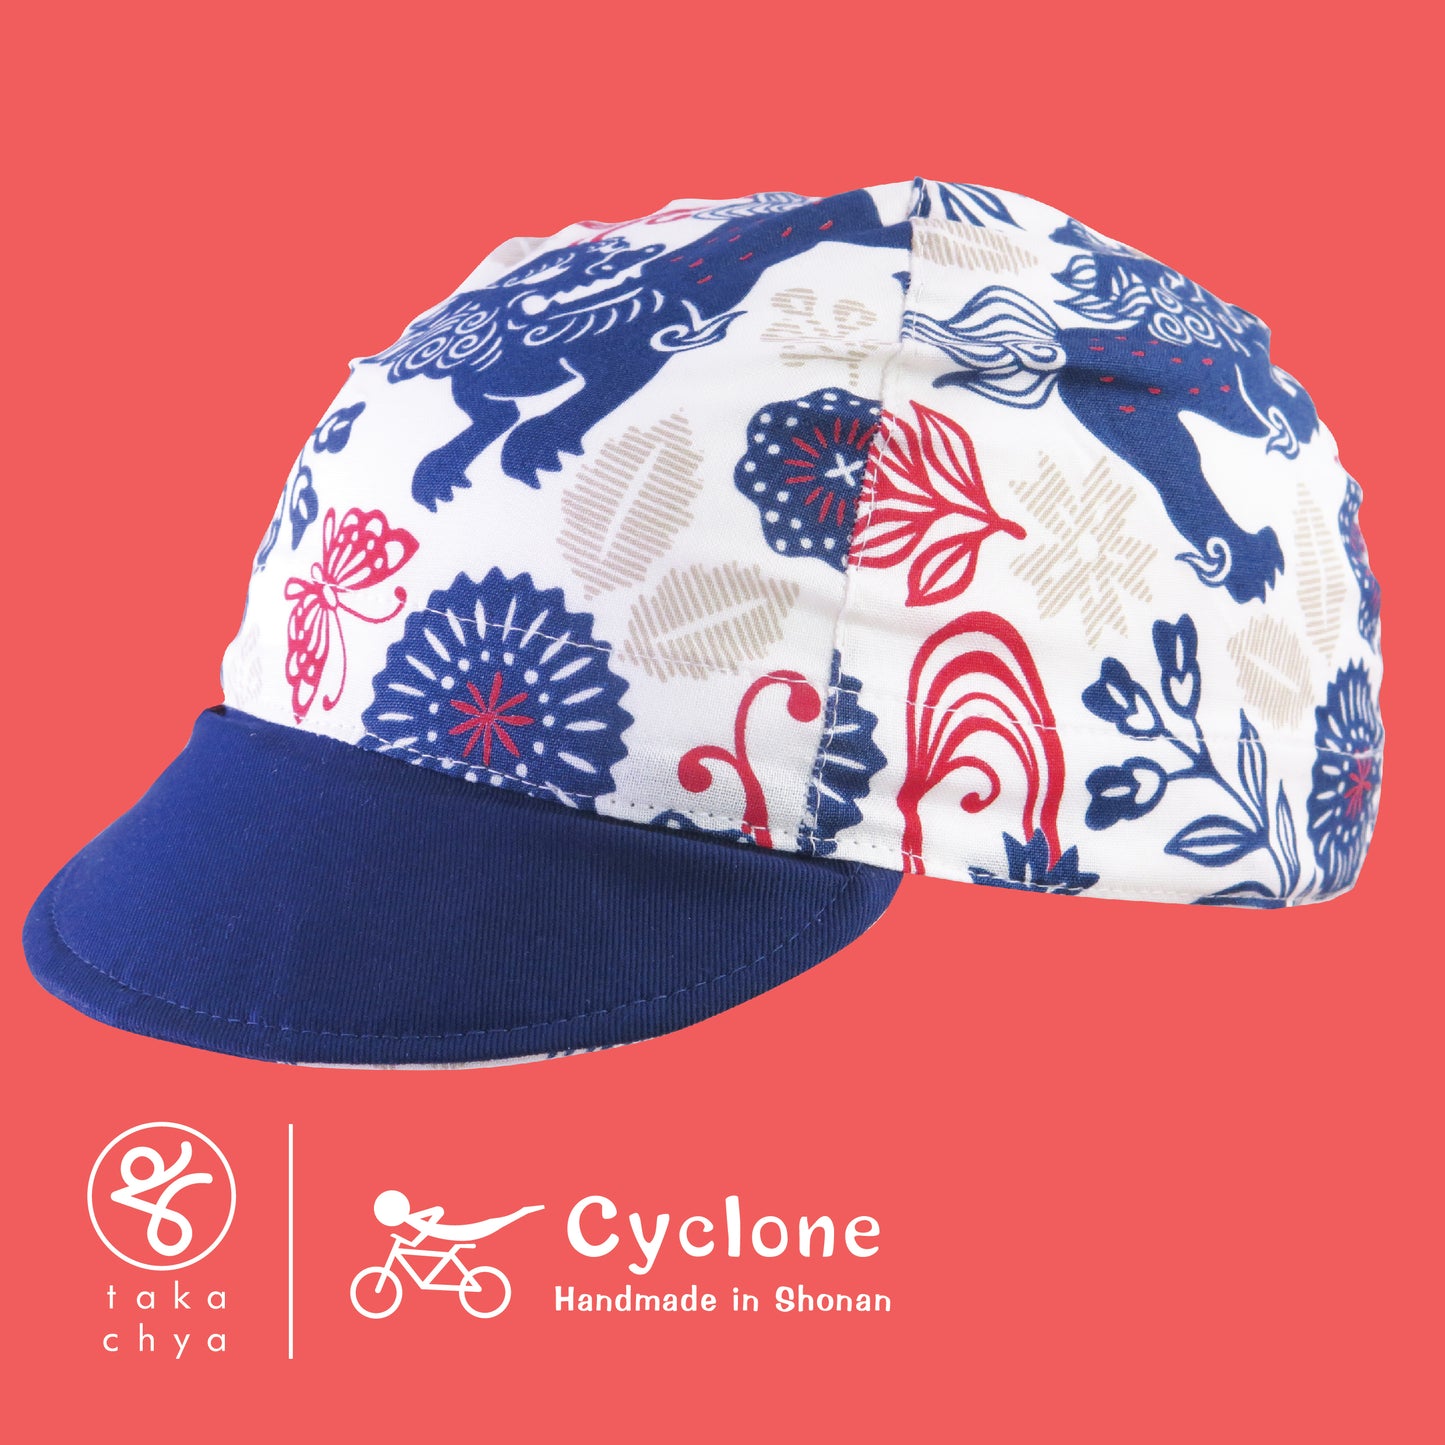 Shisa - Cyclone Chee Japanese Handmade Cycling Cap